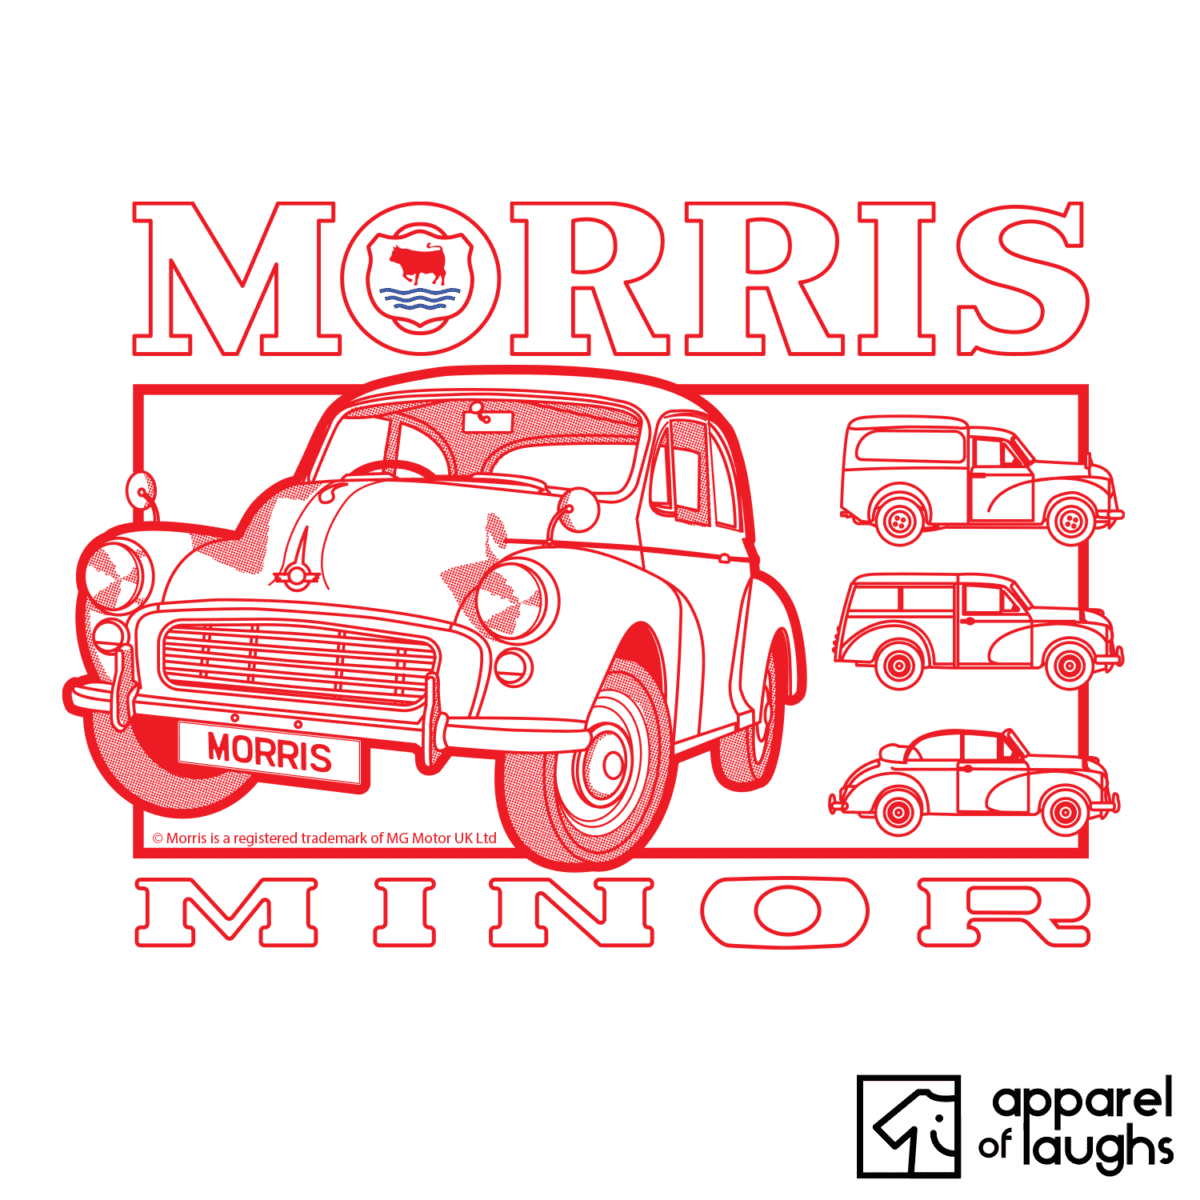 Morris Minor Car Brand Vintage Retro Logo British Leyland Motoring Heritage T-Shirt Design White